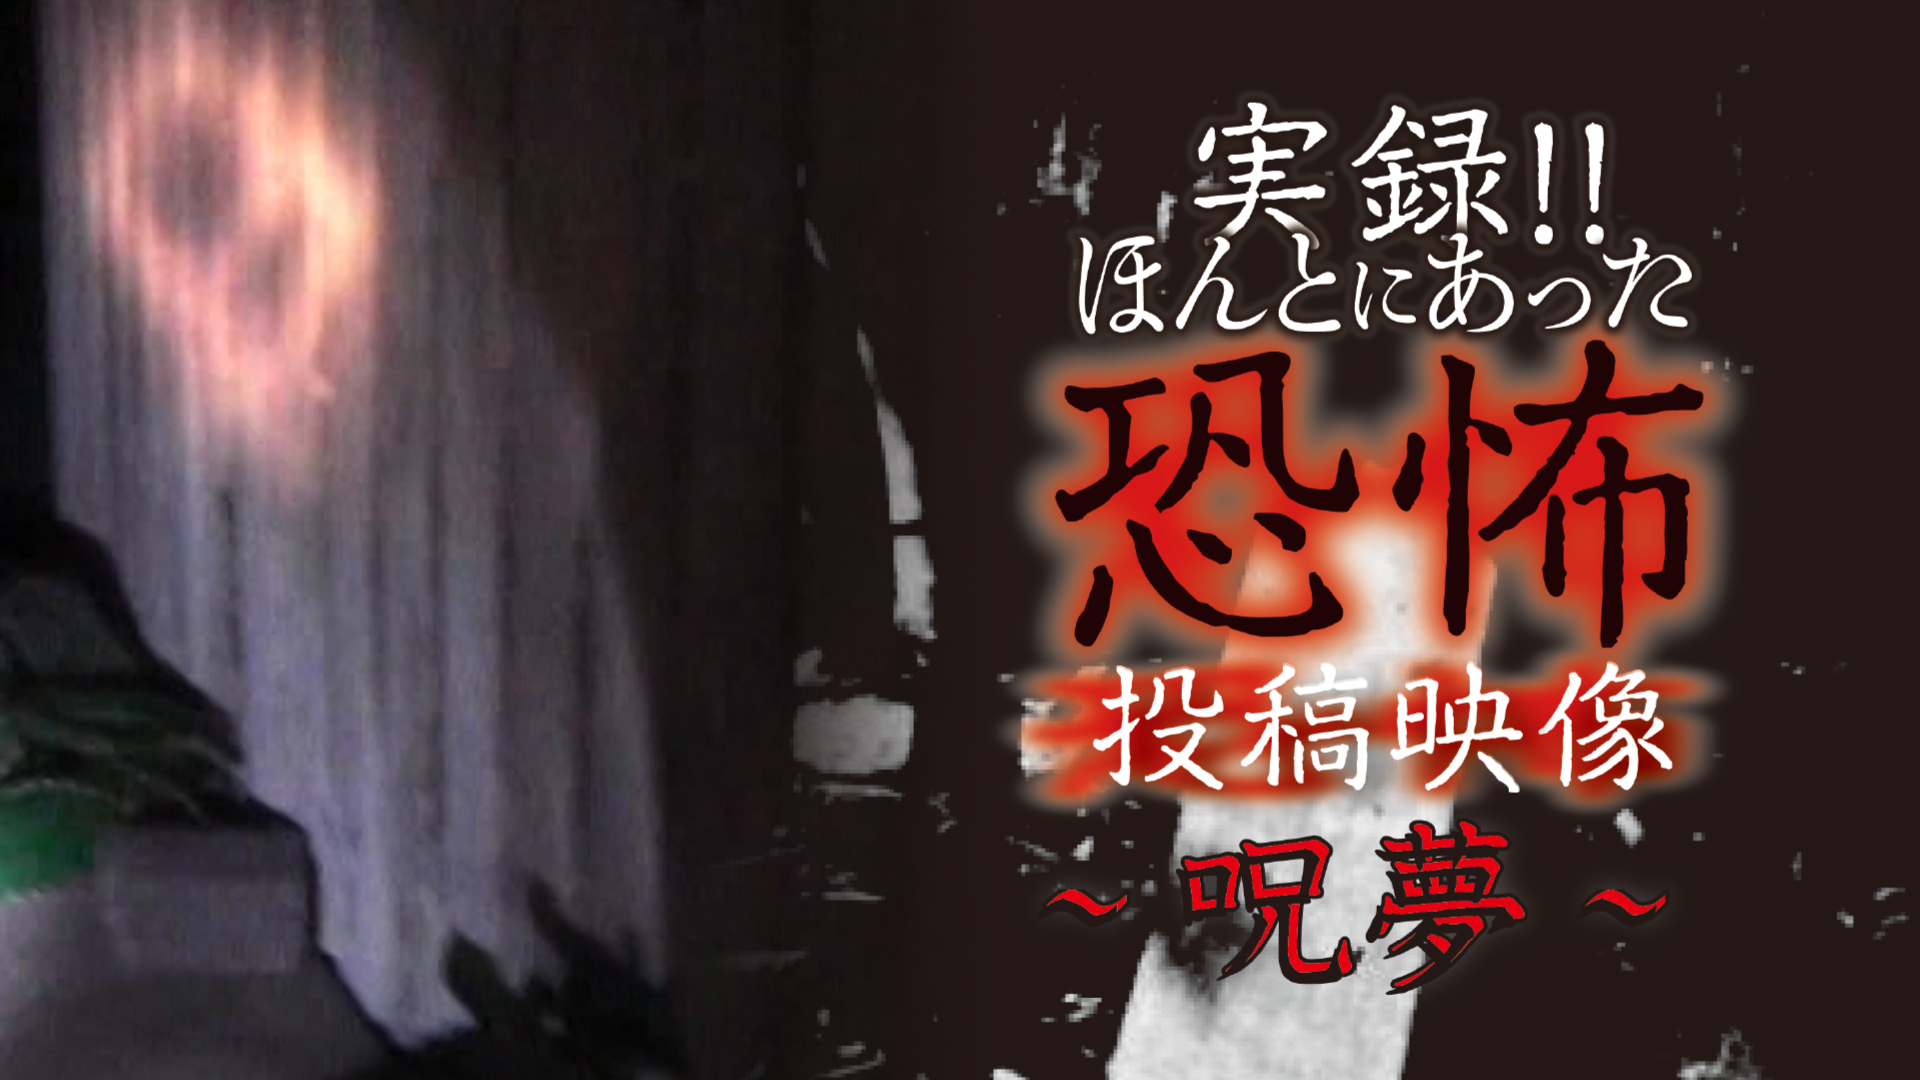 実録!!ほんとにあった恐怖の投稿映像～呪夢～(TV番組・エンタメ / 2021) - 動画配信 | U-NEXT 31日間無料トライアル